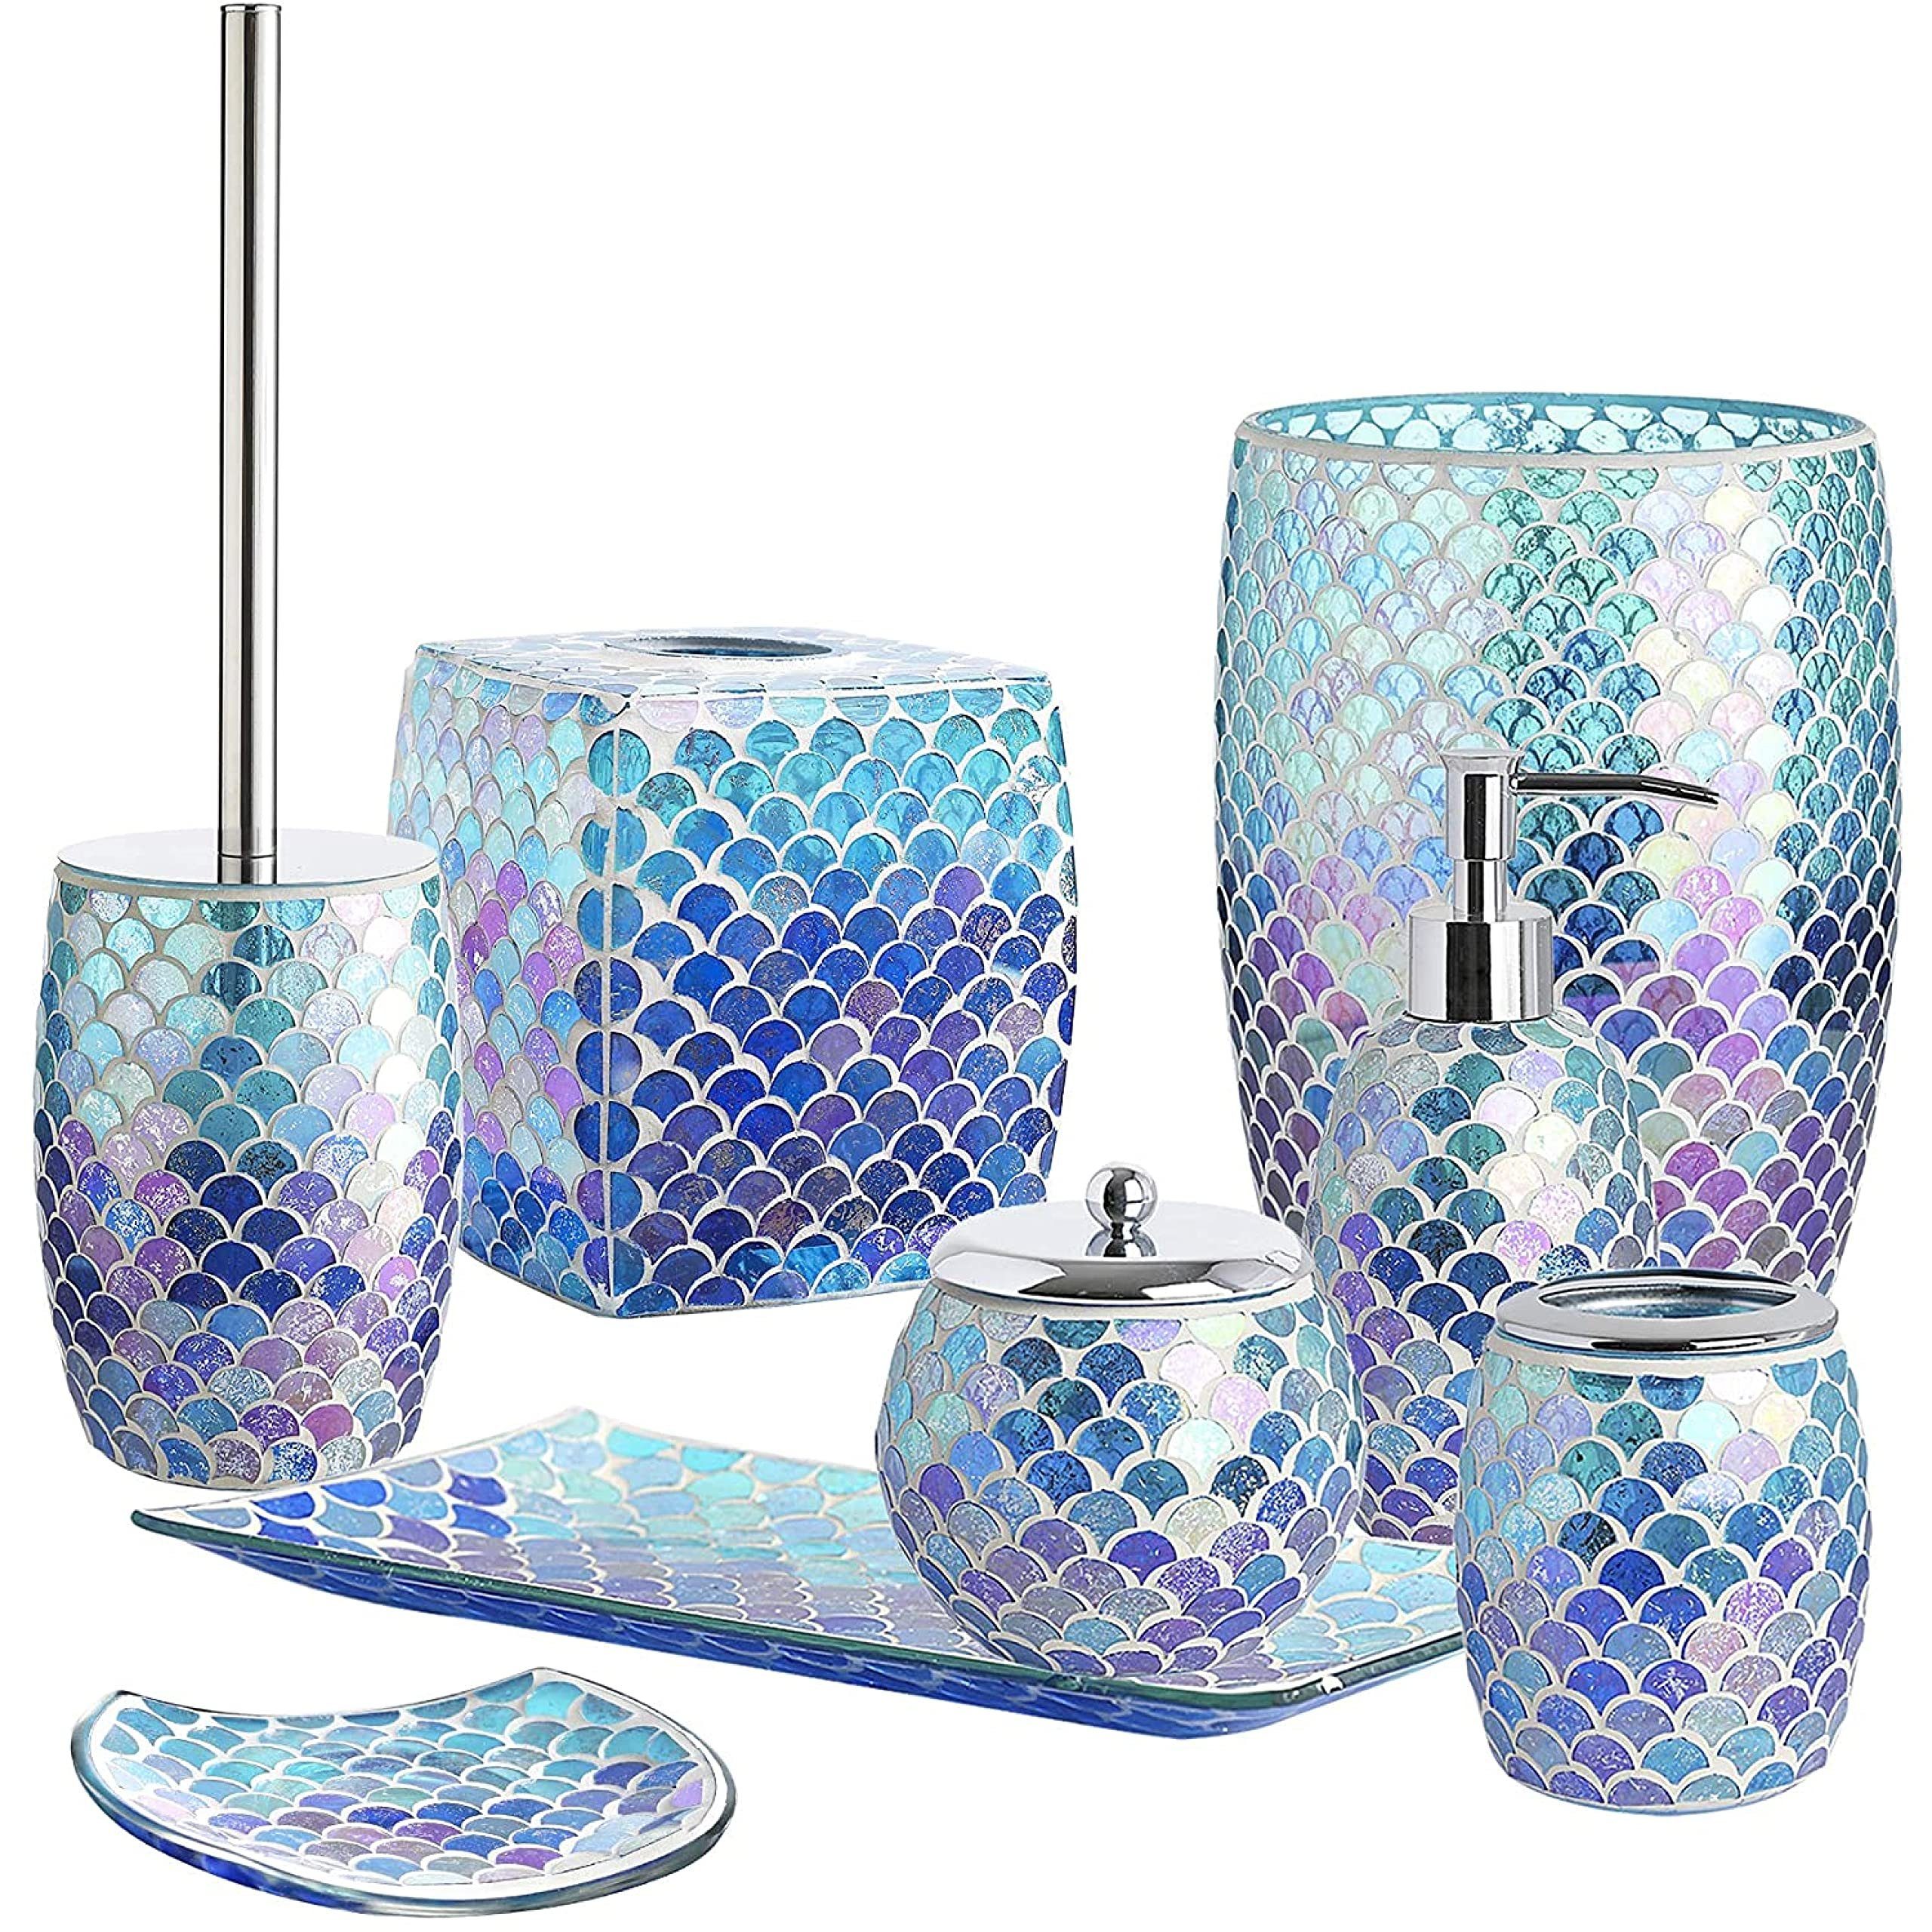 Taschentuch-Box, Bad-Accessoire, Glas Whole Housewares Papiertuchspender Fächerform Mosaik